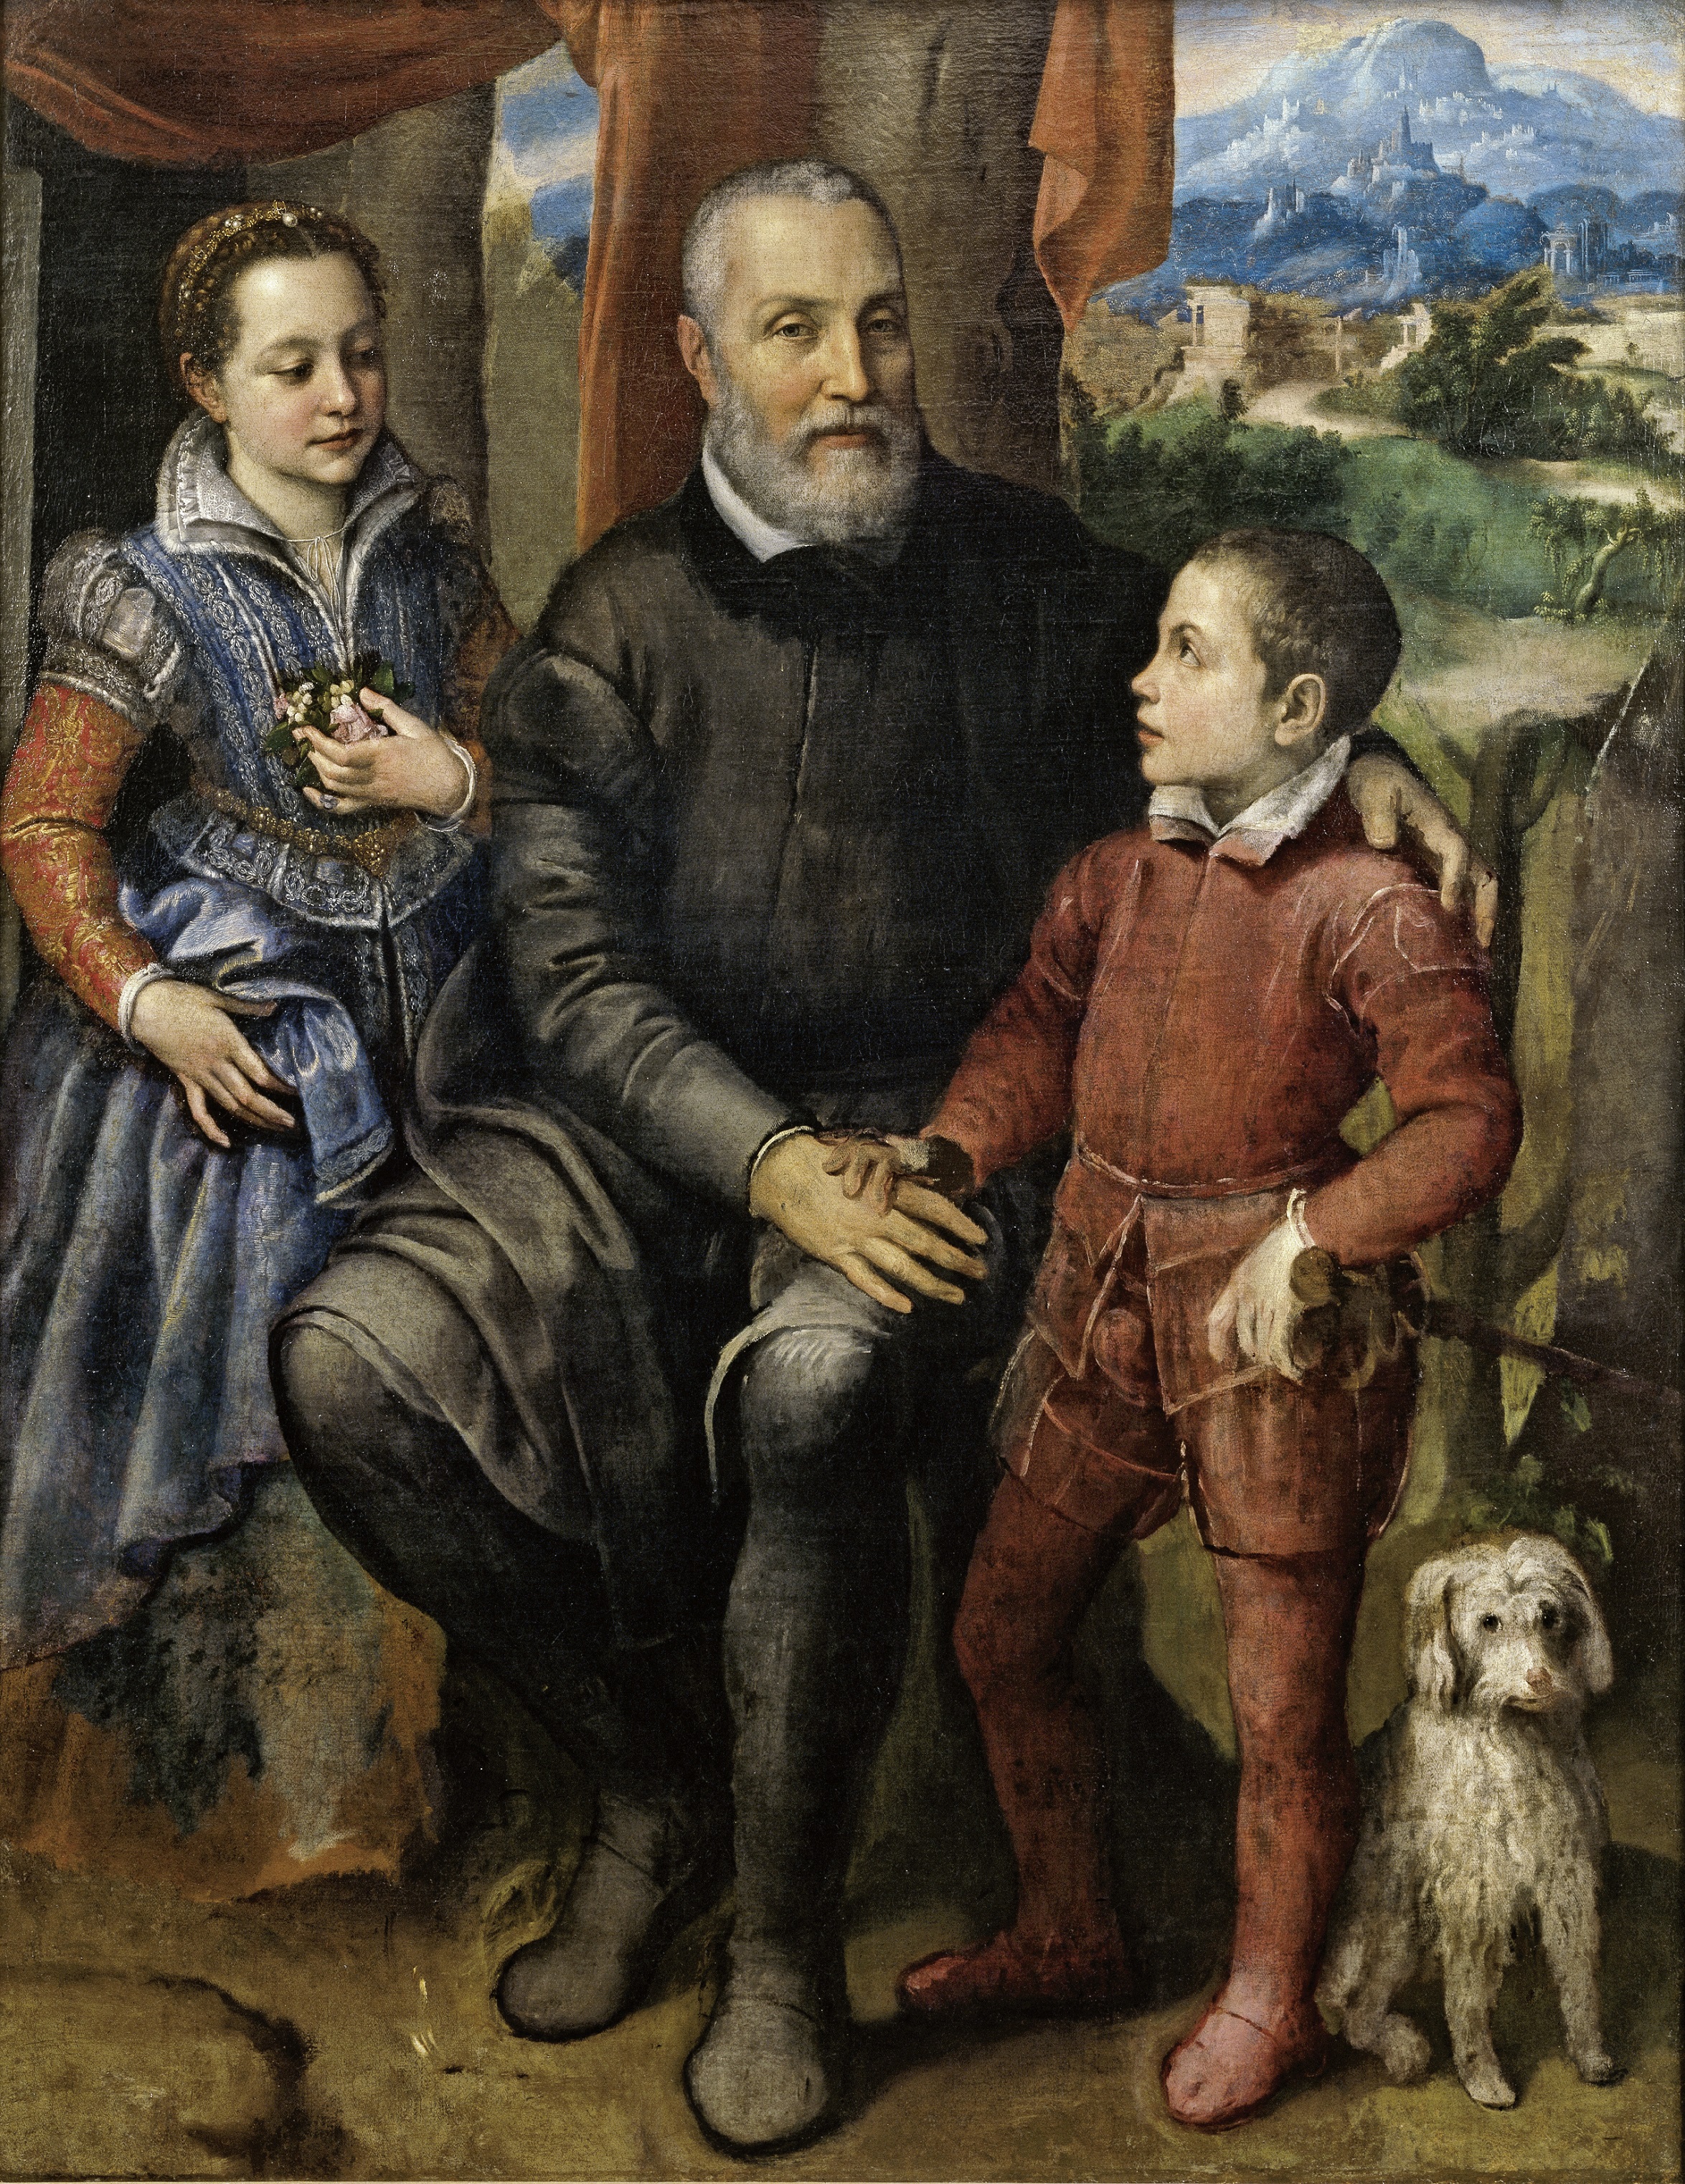 कलाकार के पिता एमिलकेयर एंगुइसोला, ब्रदर एस्ट्रुबेल और सिस्टर मिनर्वा के साथ पोर्ट्रेट समूह by Sofonisba Anguissola - सी ए. १५५९ - १५७ x १२२ से। मी 